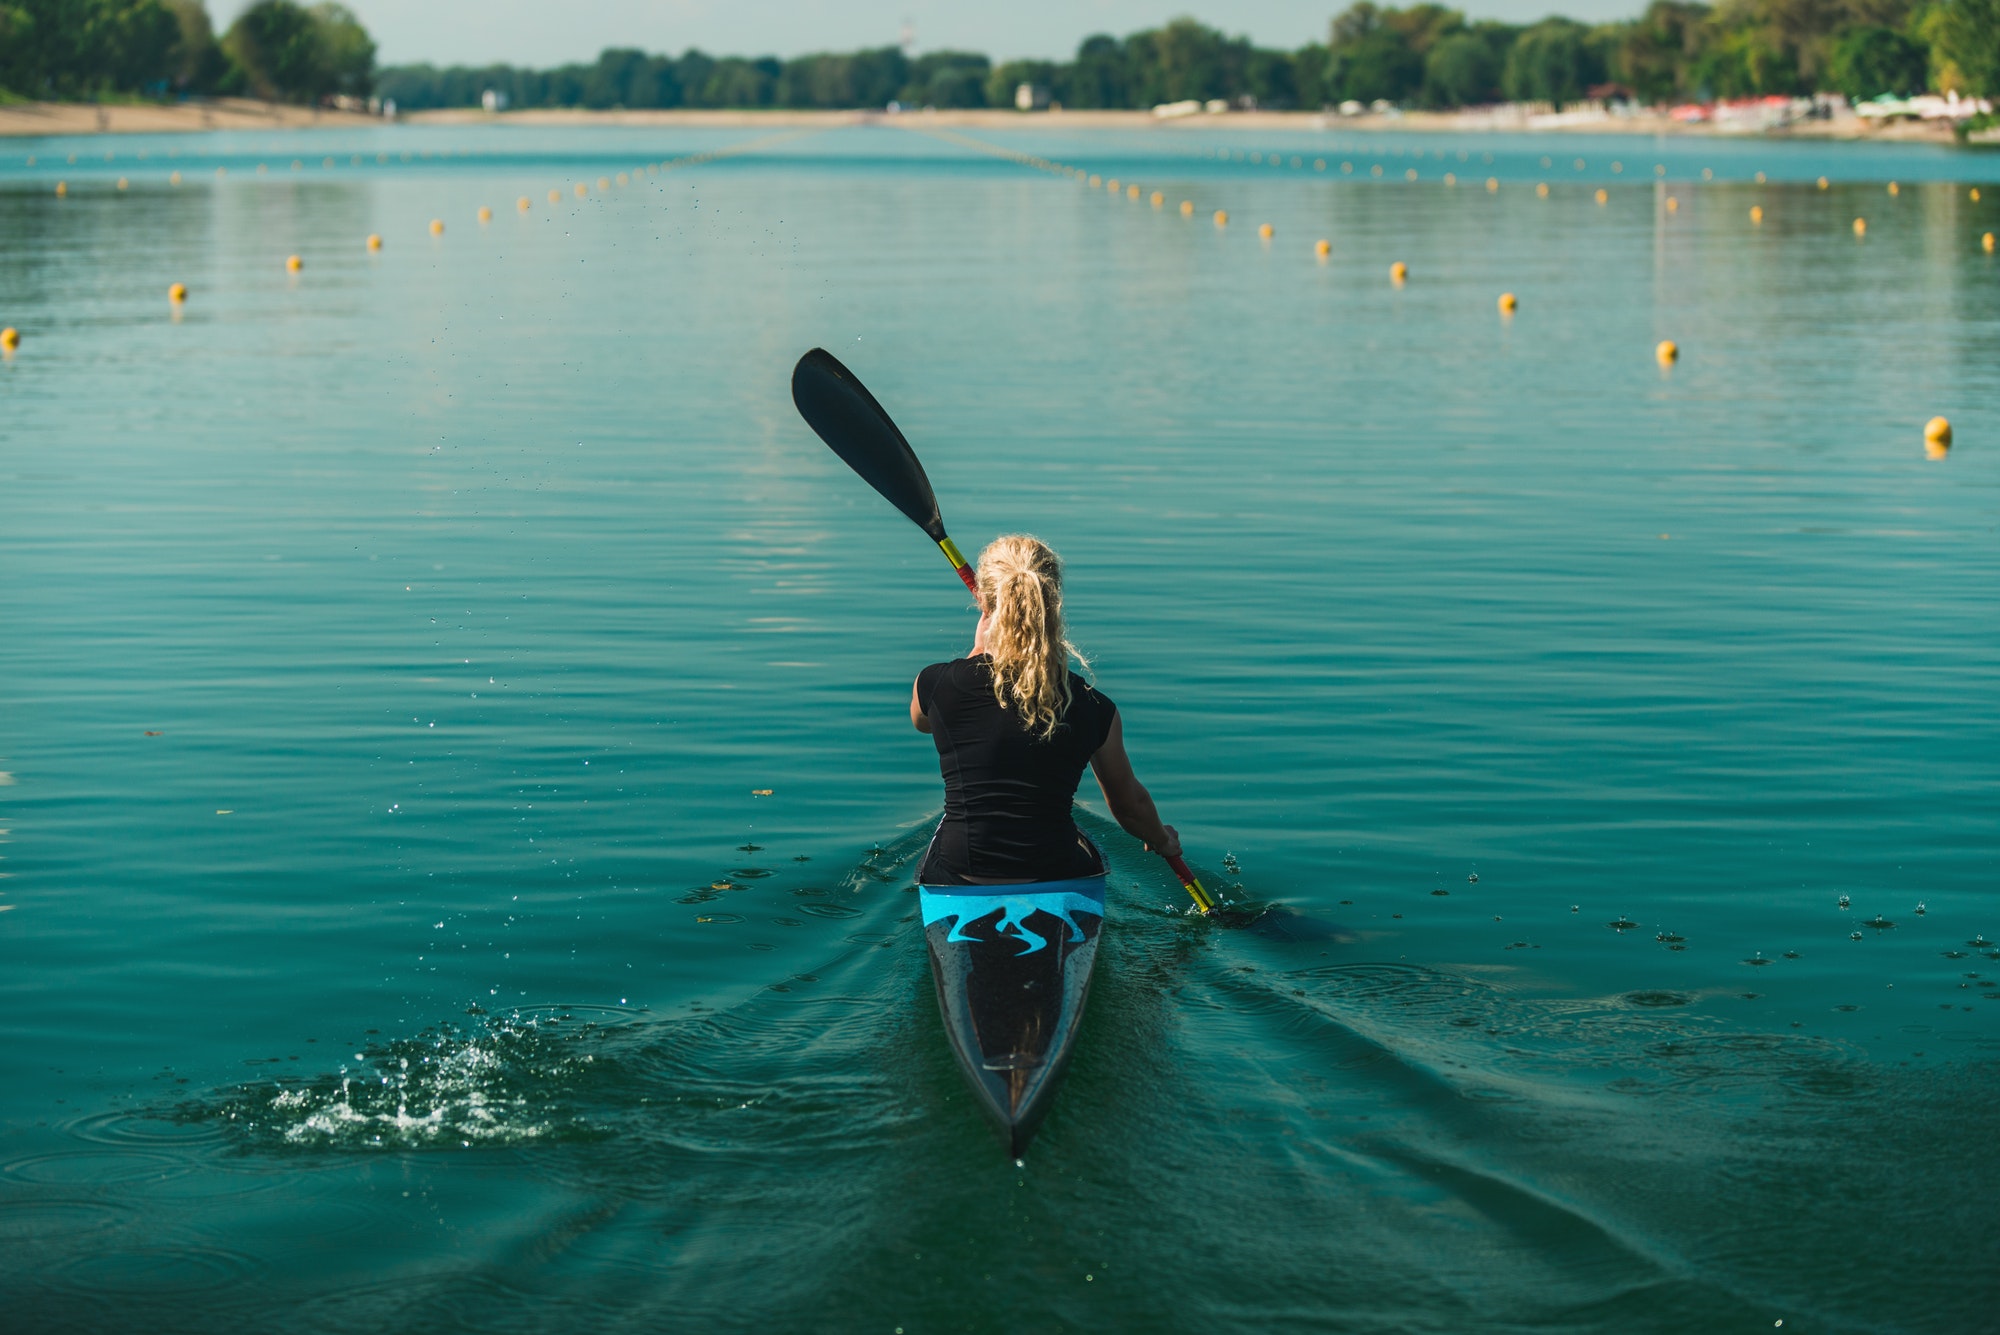 Kayak - female kayaker, training